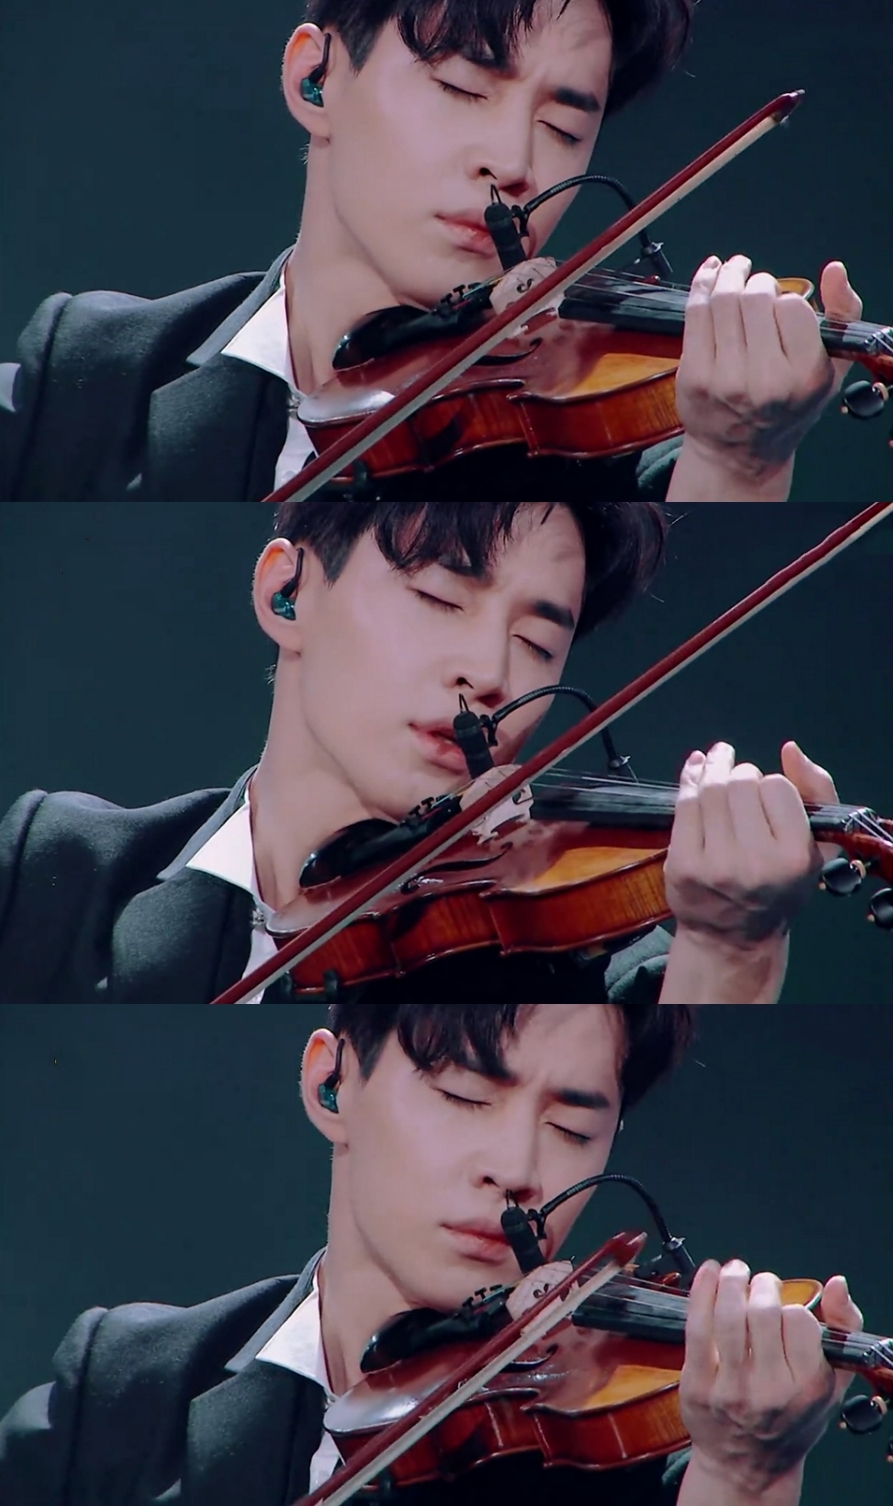 音乐综艺节目《声入人心》出品人:刘宪华小提琴舞台秀表演《despacito